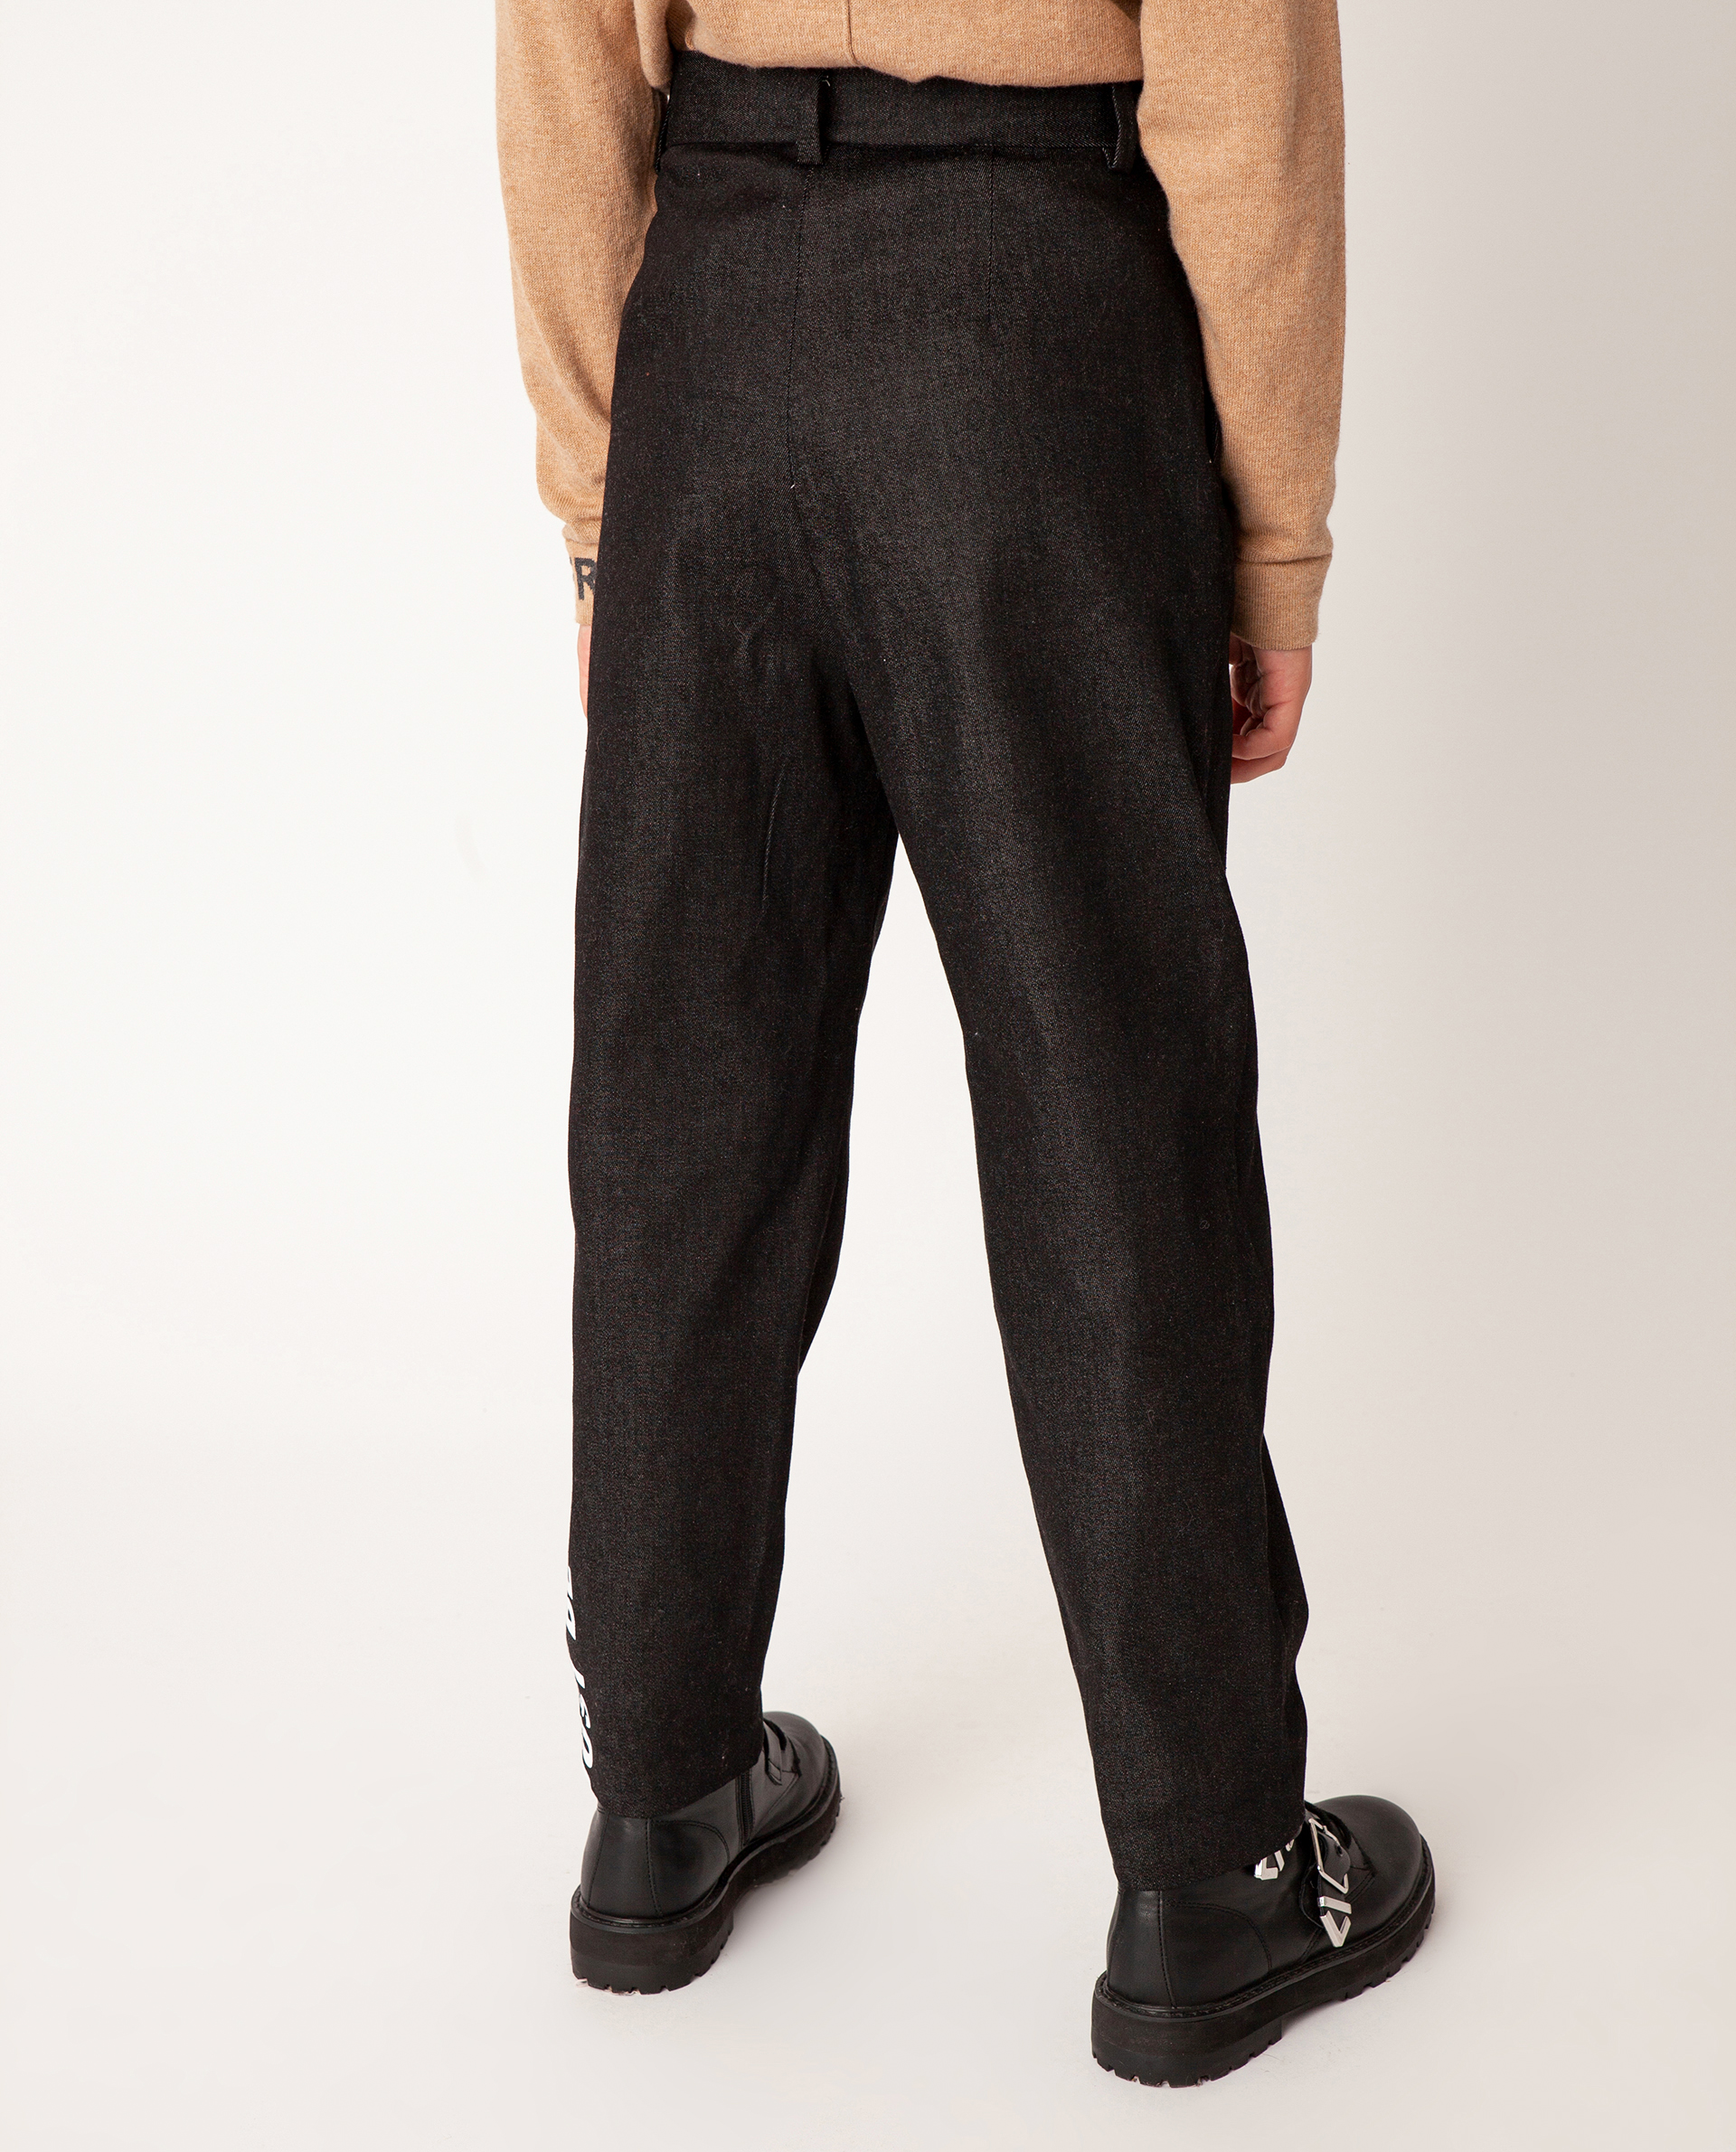 Серые брюки Gulliver 22008GJC6306, размер 146, цвет серый regular fit / прямые - фото 2